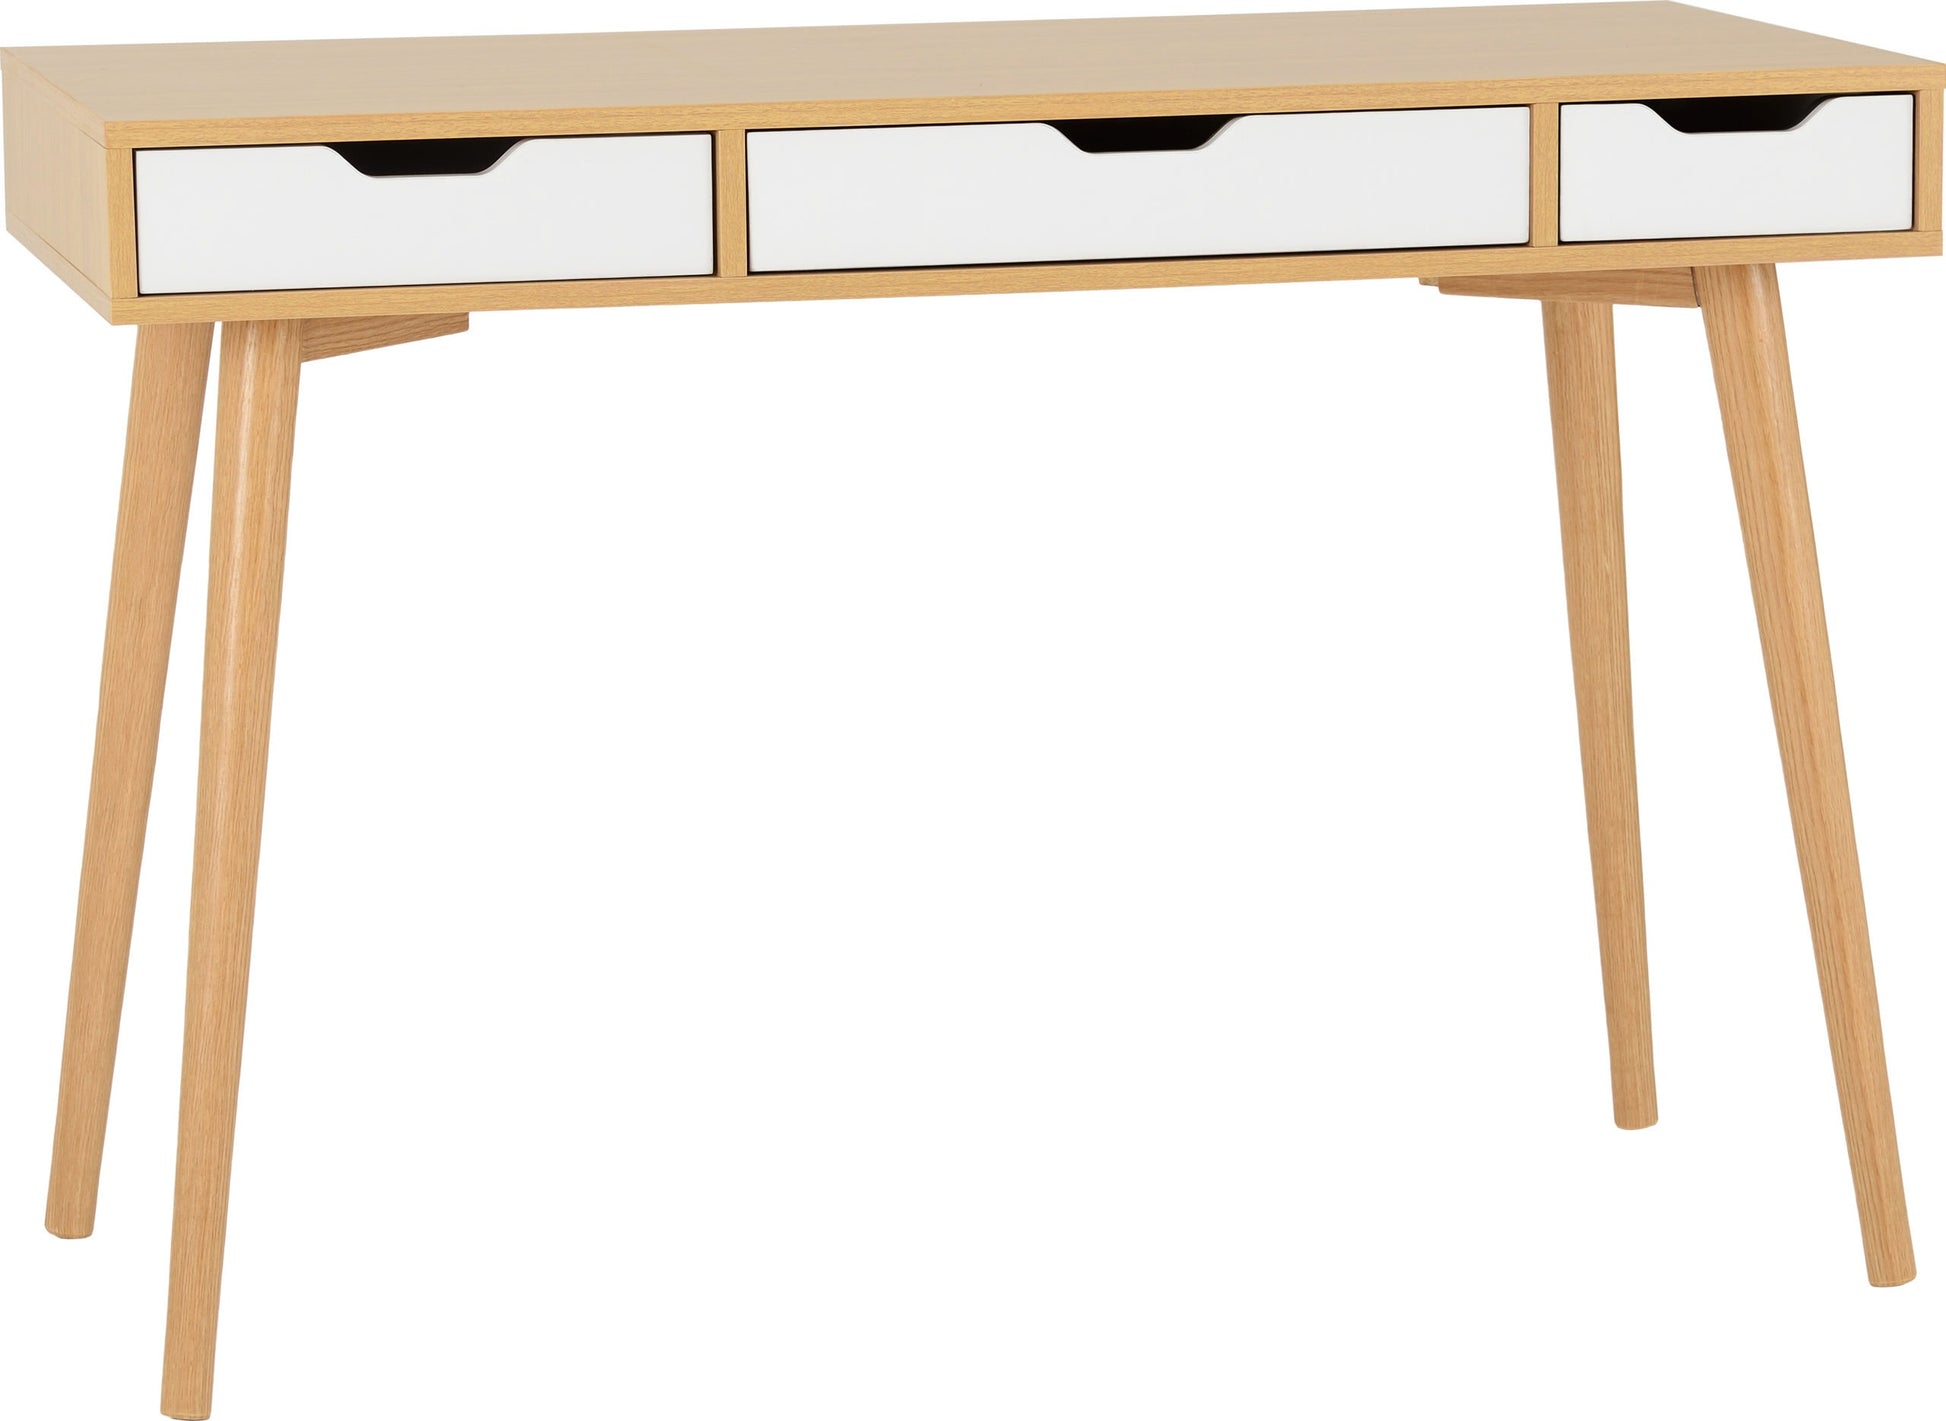 Seville 3 Drawer Console Table - White High Gloss/Light Oak Effect Veneer